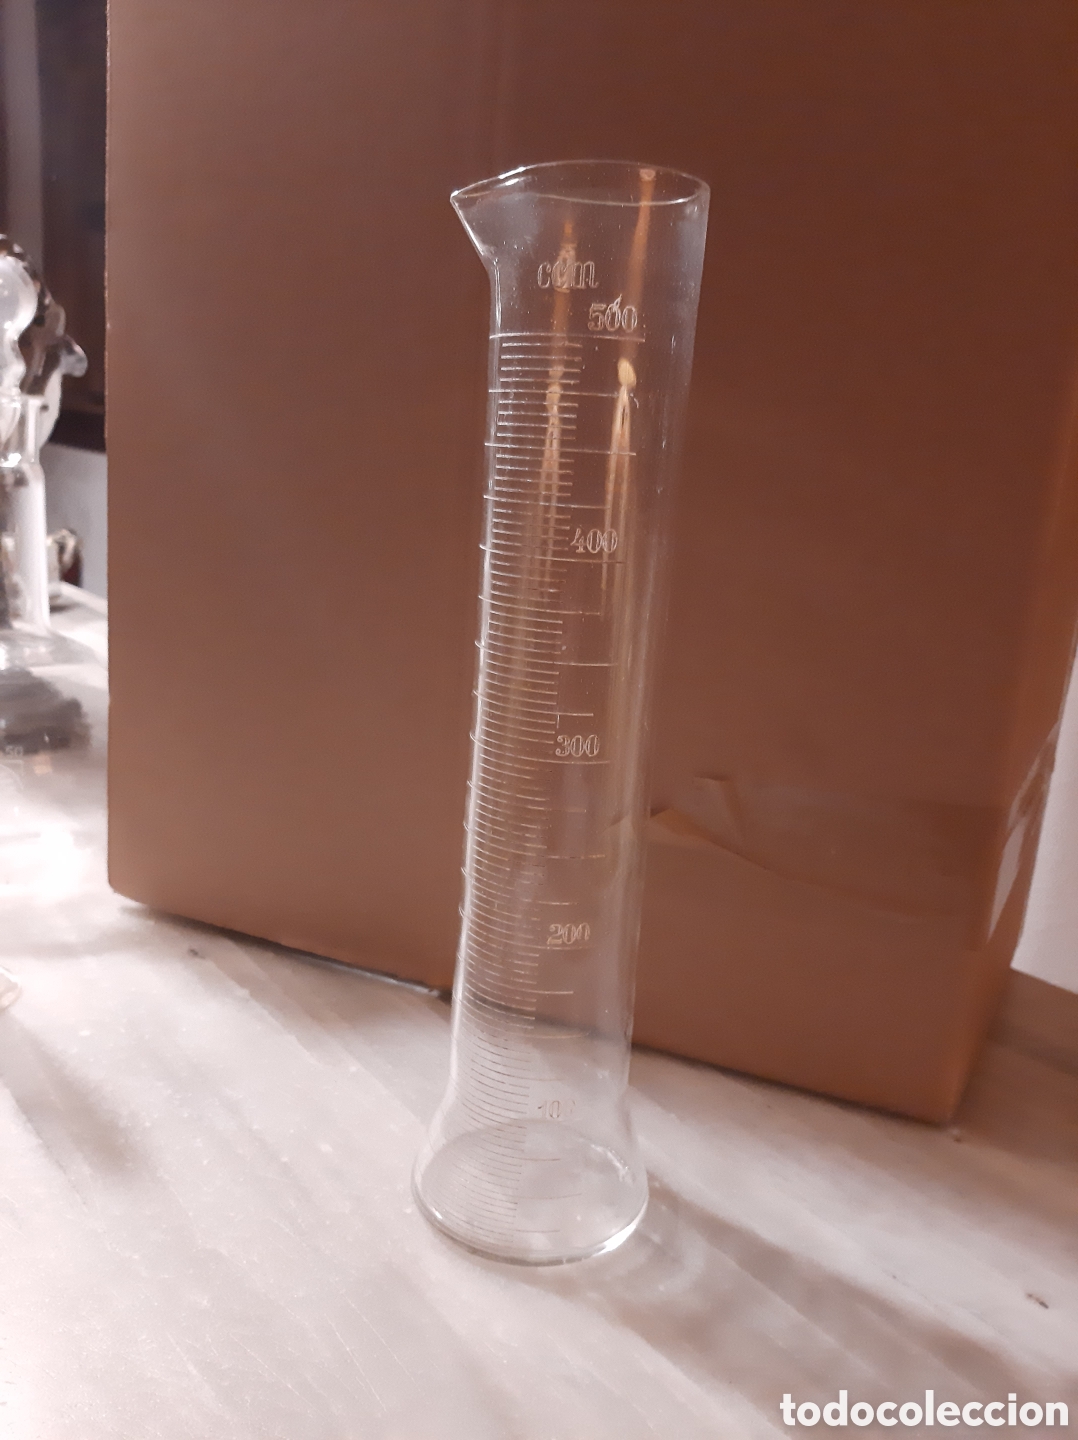 antigua probeta vaso medidor farmacia cristal - Compra venta en  todocoleccion